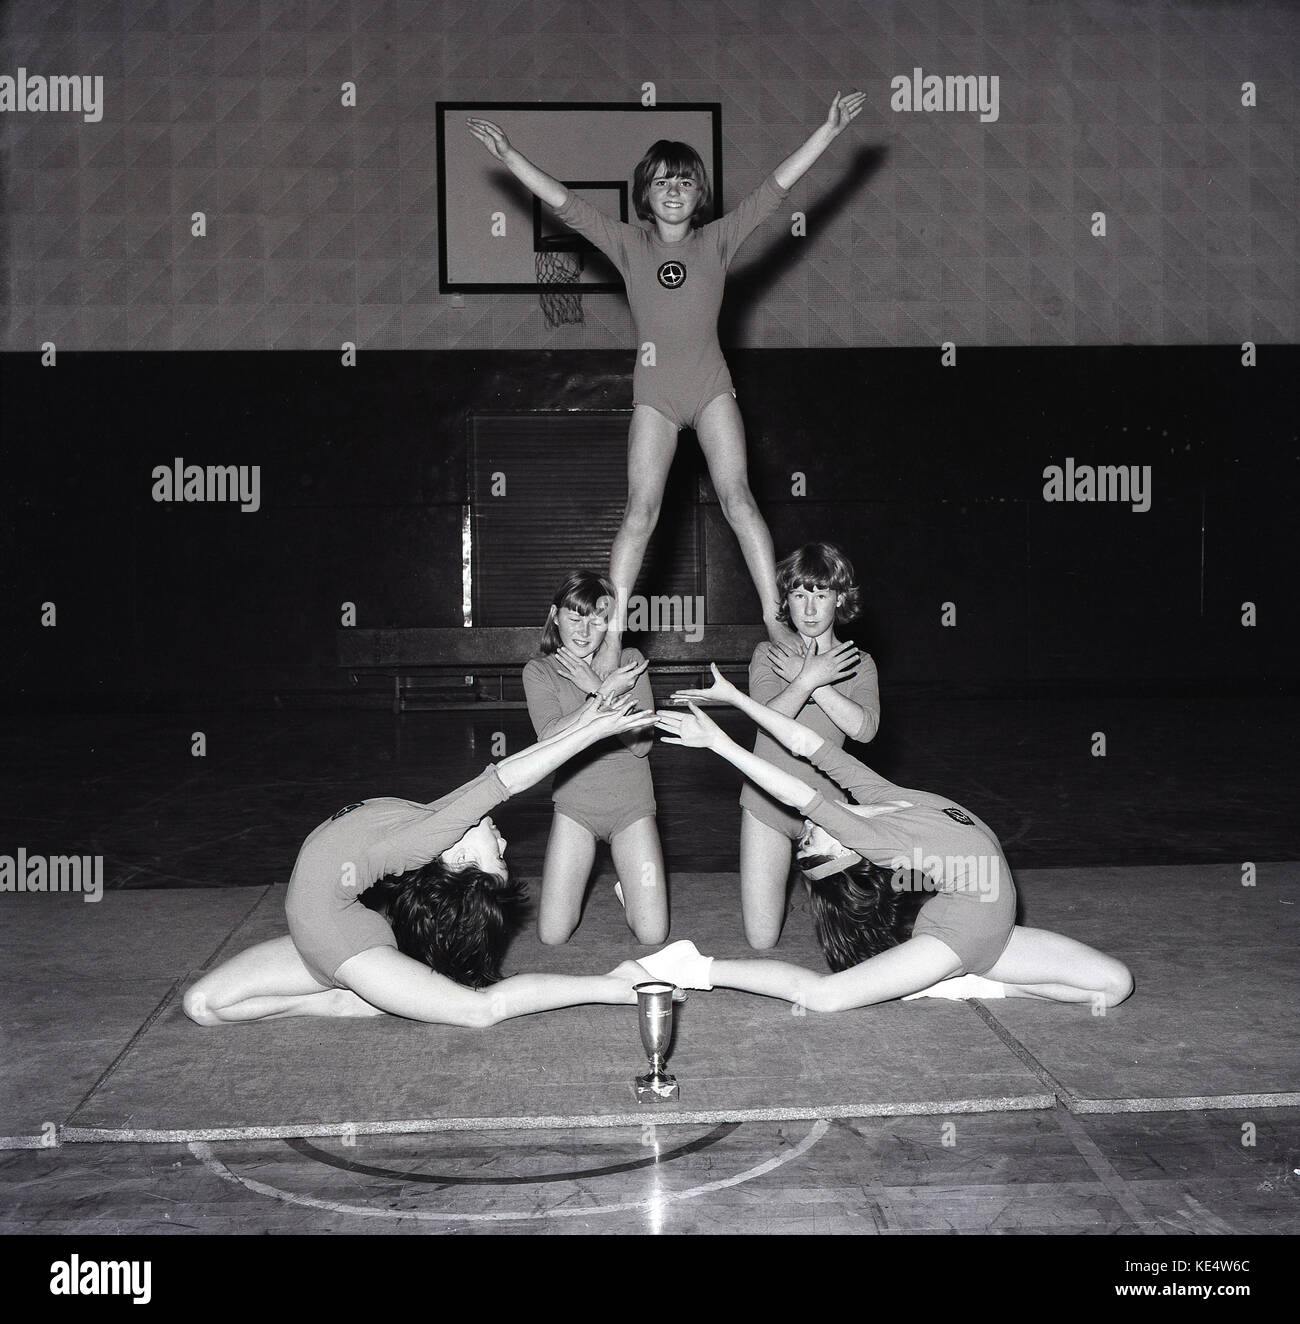 1960, una imagen desde mediados de la década de los años sesenta de cinco mujeres jóvenes gimnastas artísticos mostrando sus talentos en la sala de deportes y de la escuela con un trofeo que han ganado en la estera delante de ellos, Inglaterra, Reino Unido. Foto de stock